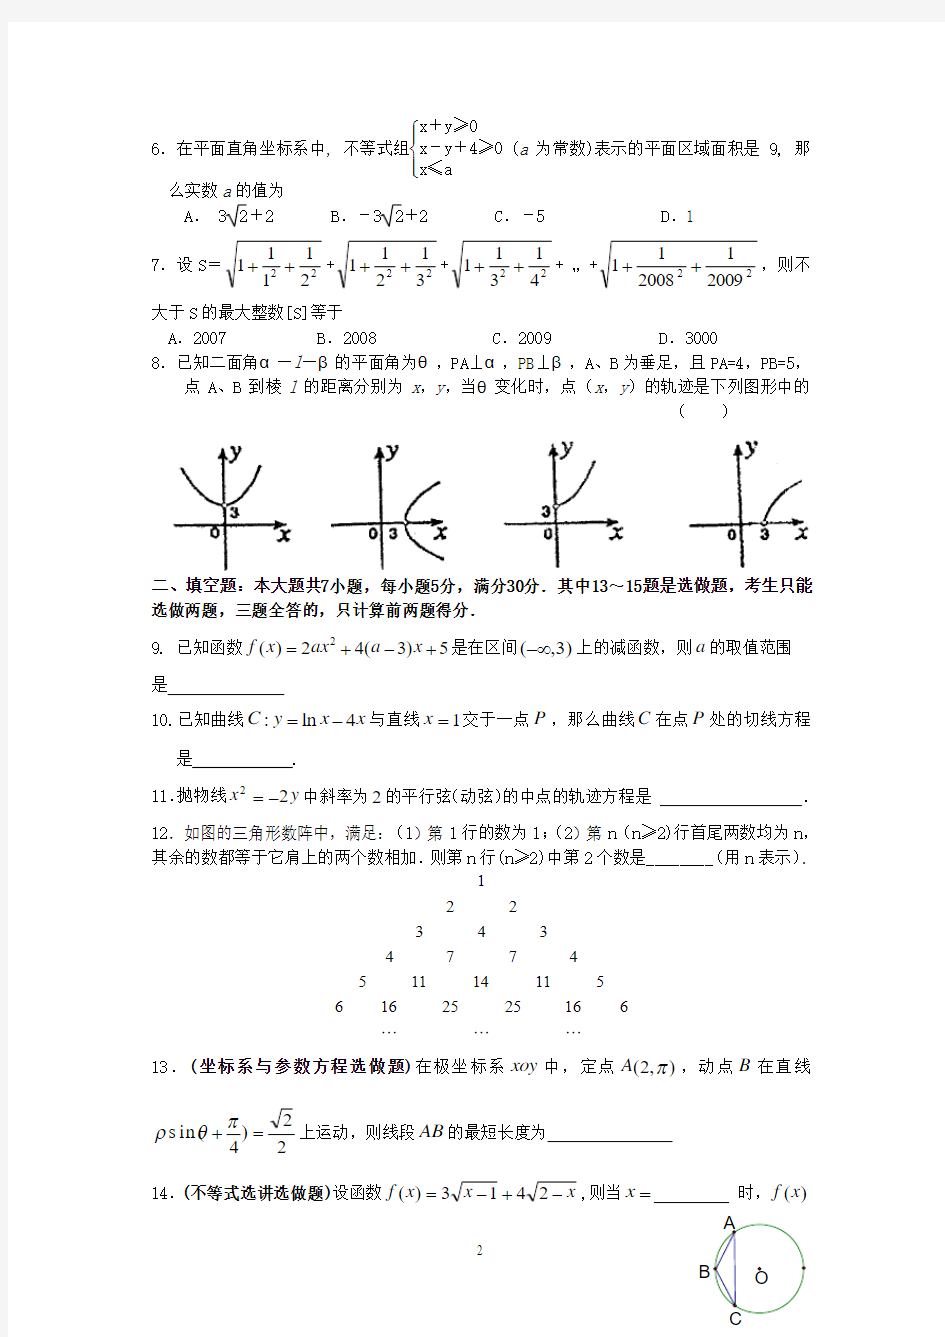 2014年高考理科数学总复习试卷第3卷题目及其答案